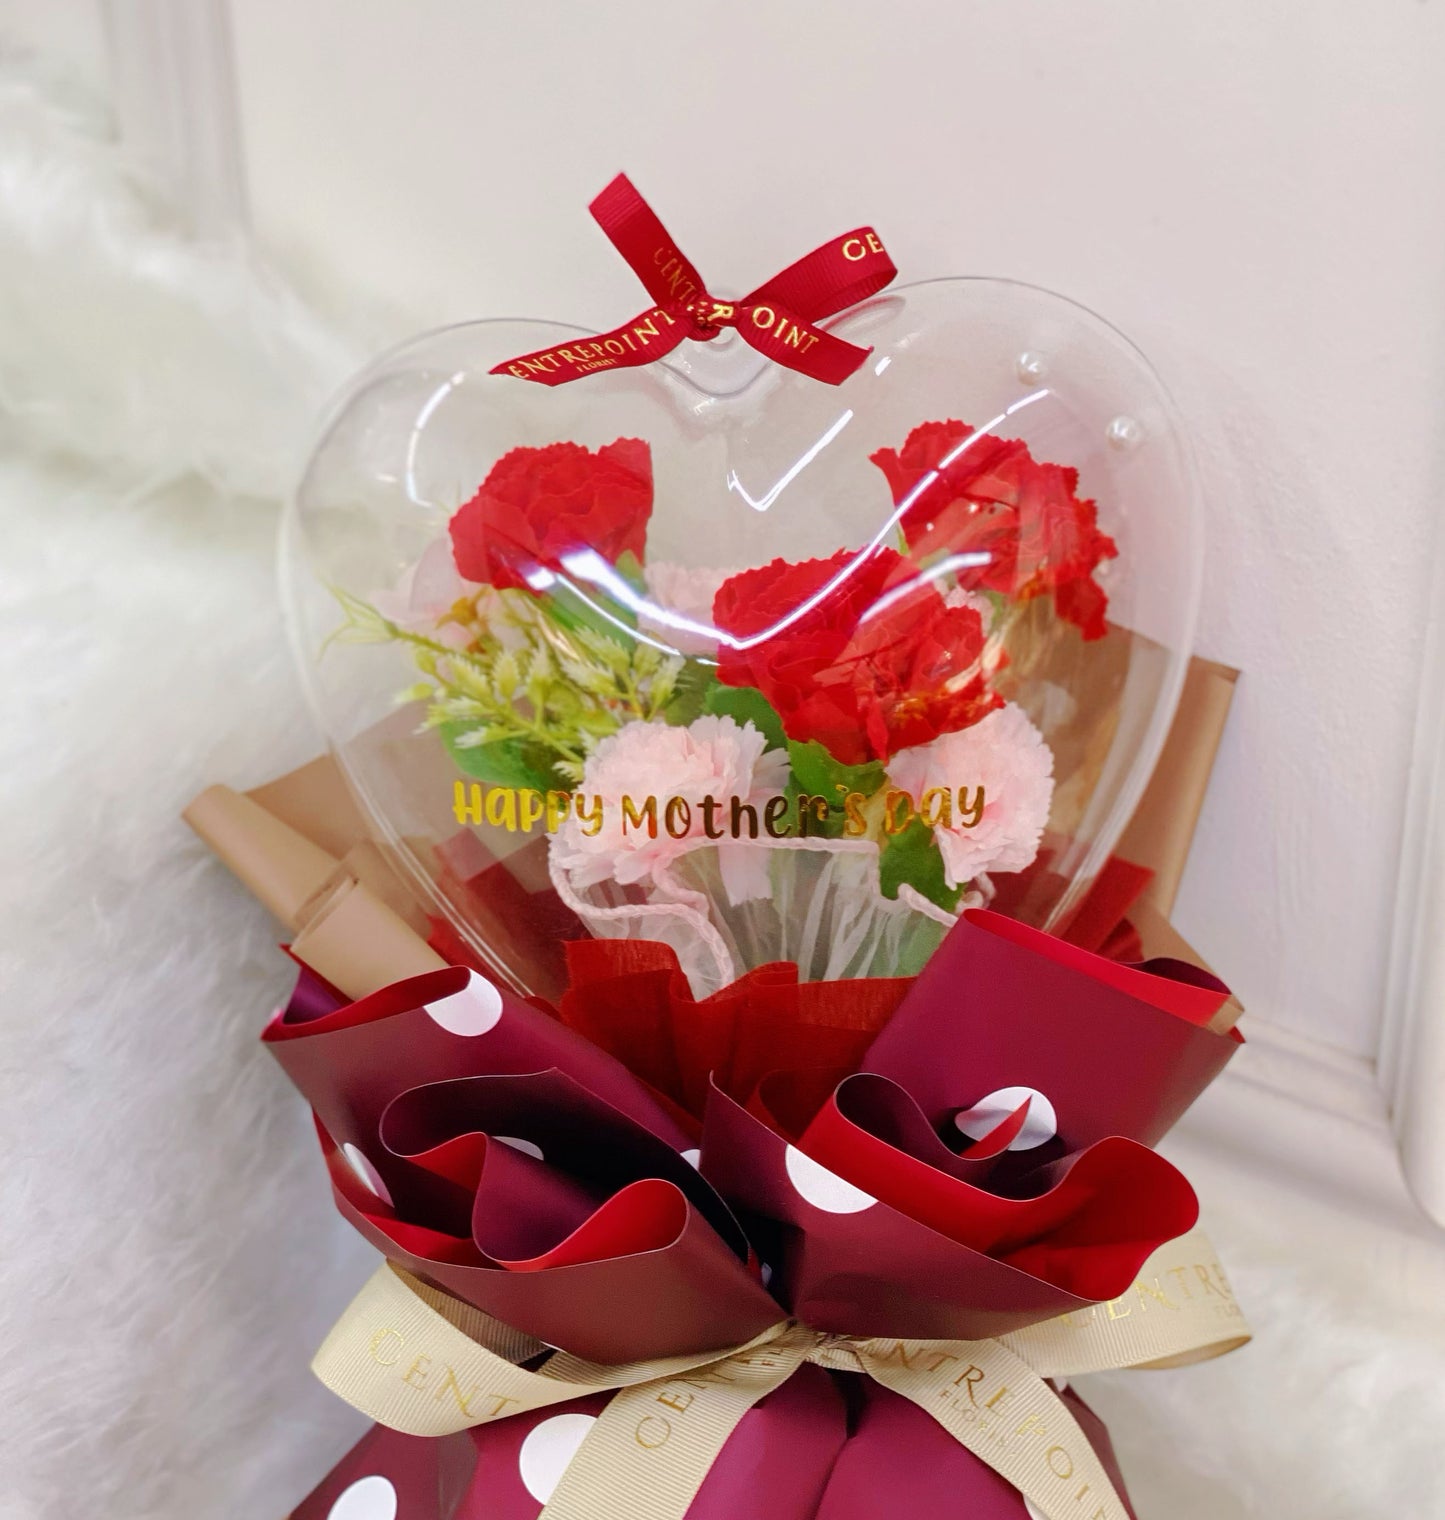 HMD 014 (RM 100.00) - Soap Flower Carnations